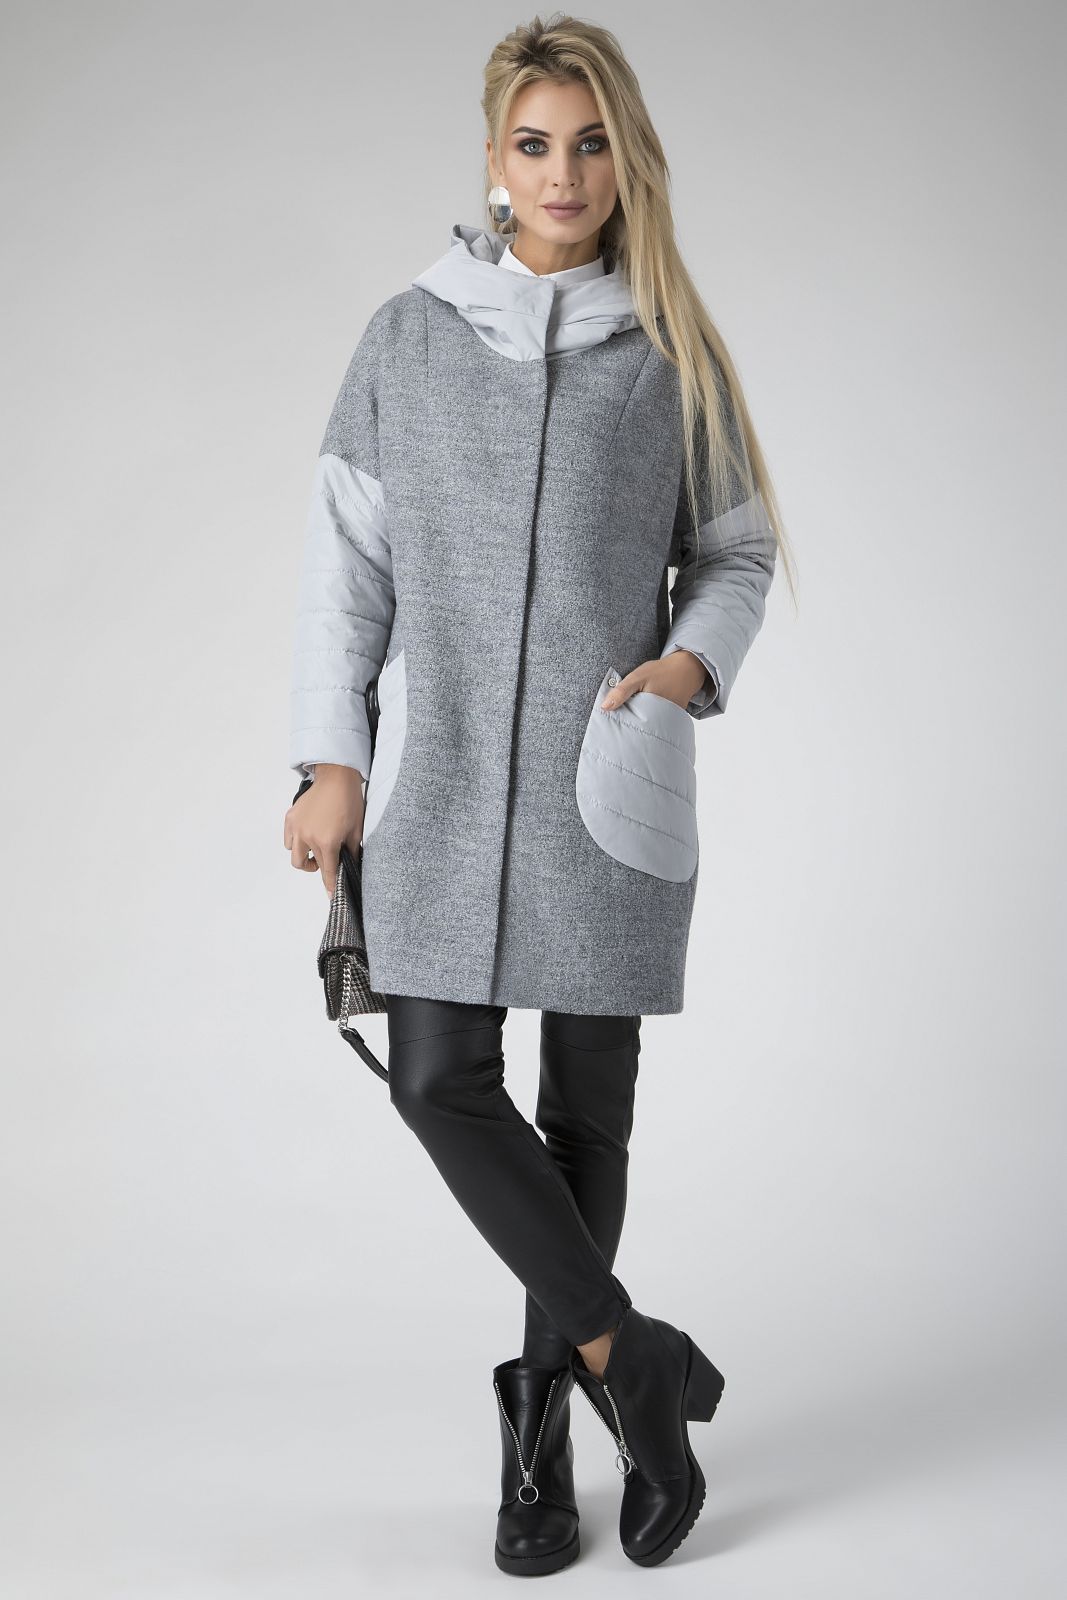 Пальто со спортивной. Пальто зима Electrastyle. Electrastyle пальто зима 2021. Комбинированное пальто. Женское пальто комбинированное с трикотажем.